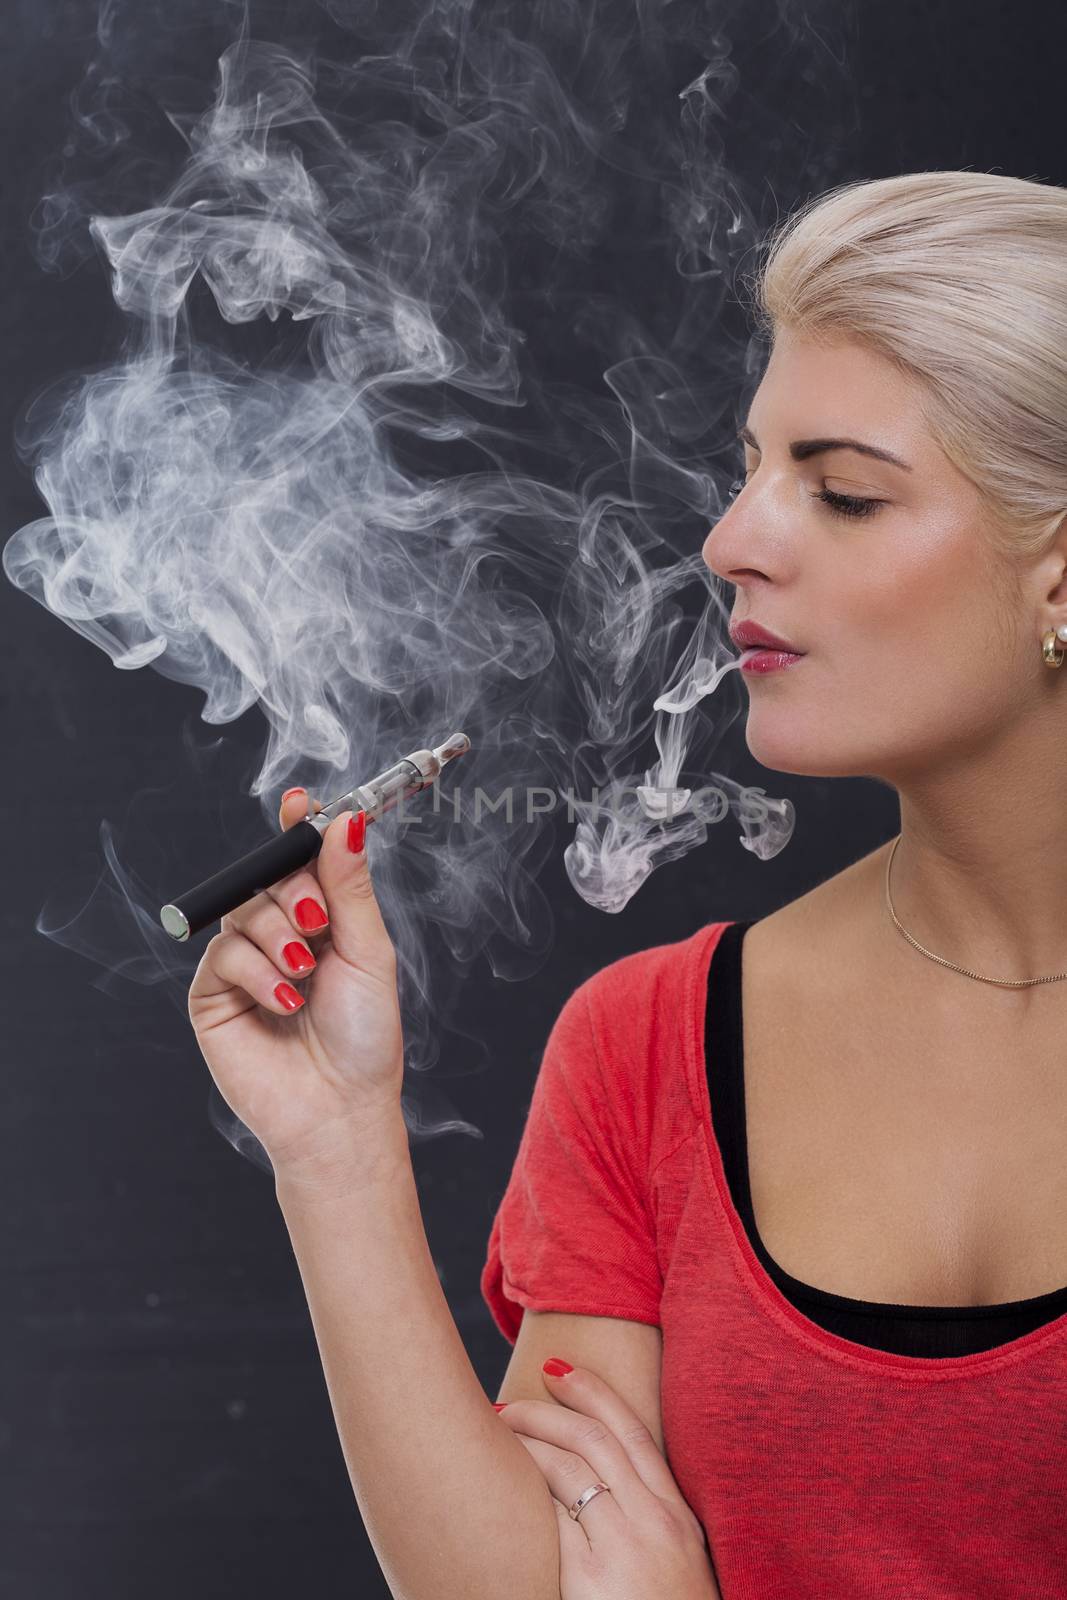 Stylish blond woman smoking an e-cigarette by juniart